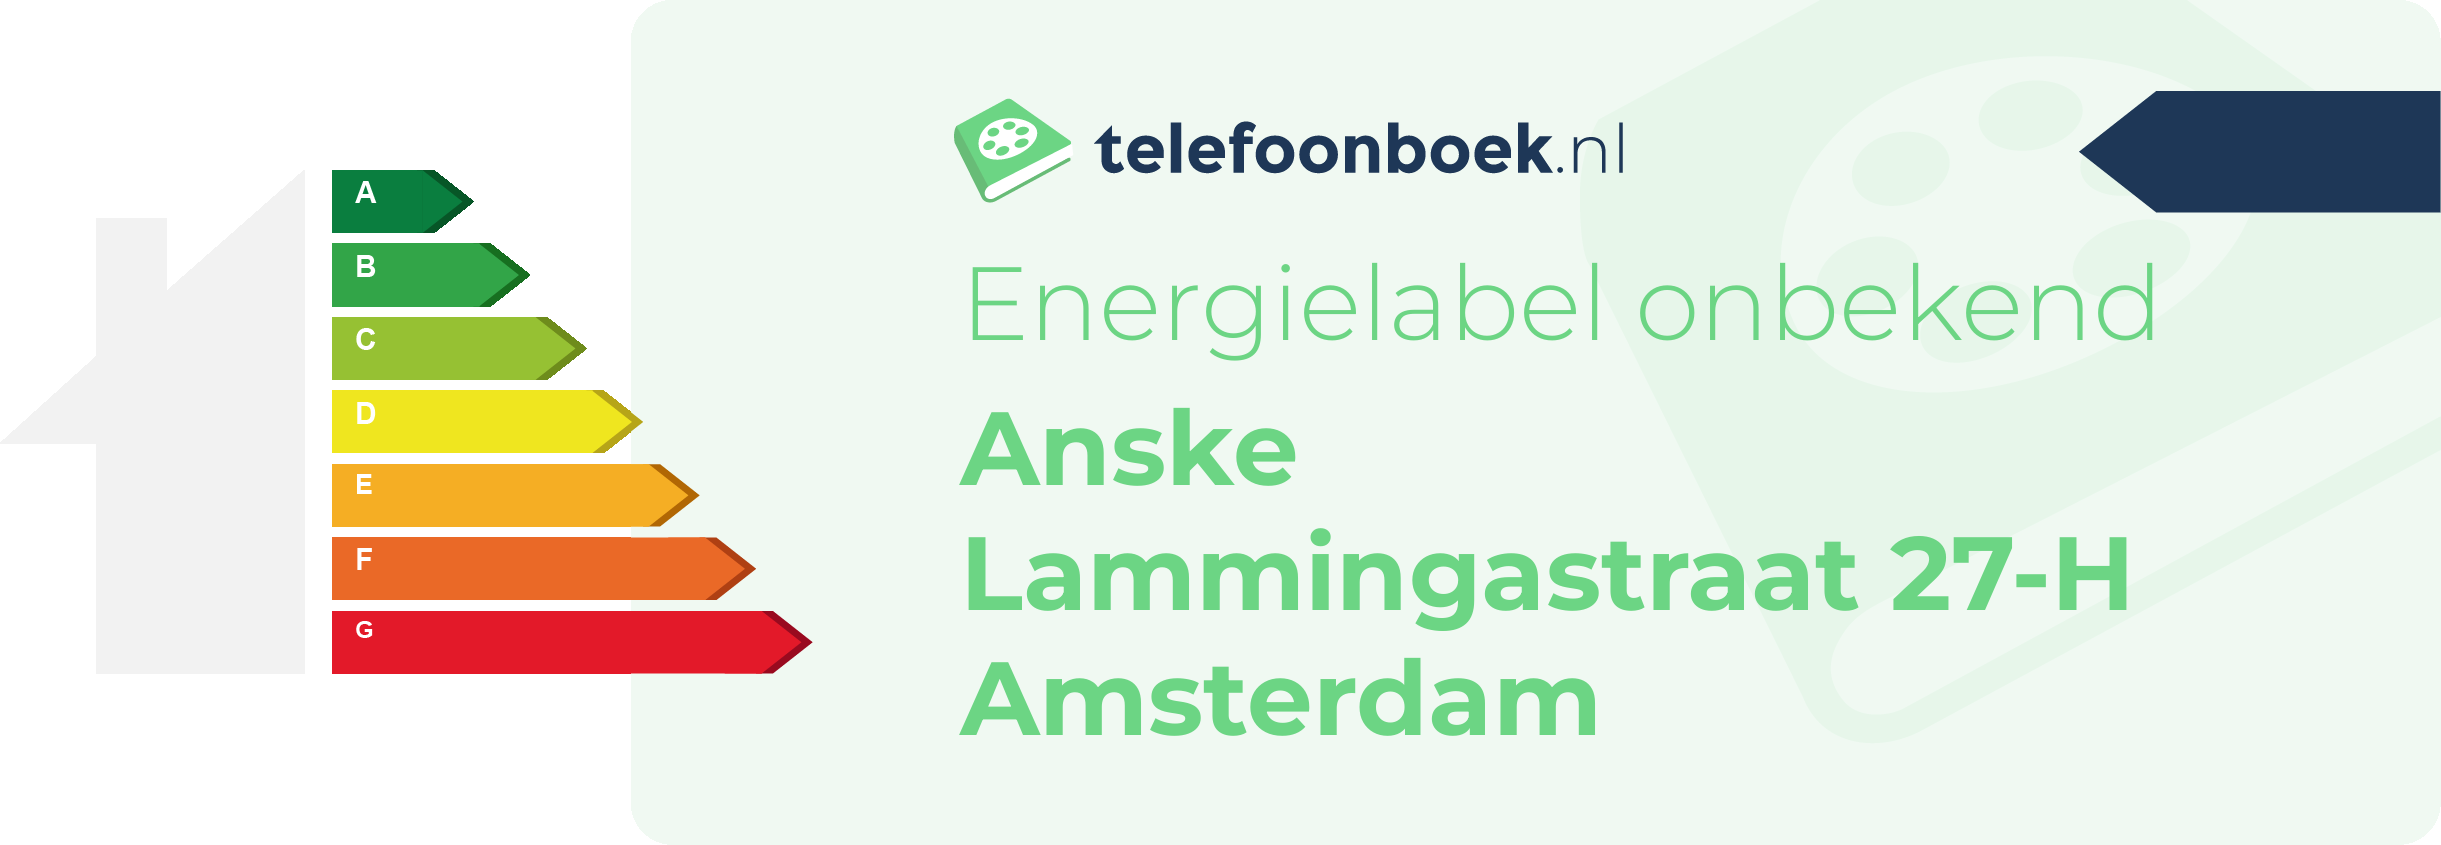 Energielabel Anske Lammingastraat 27-H Amsterdam